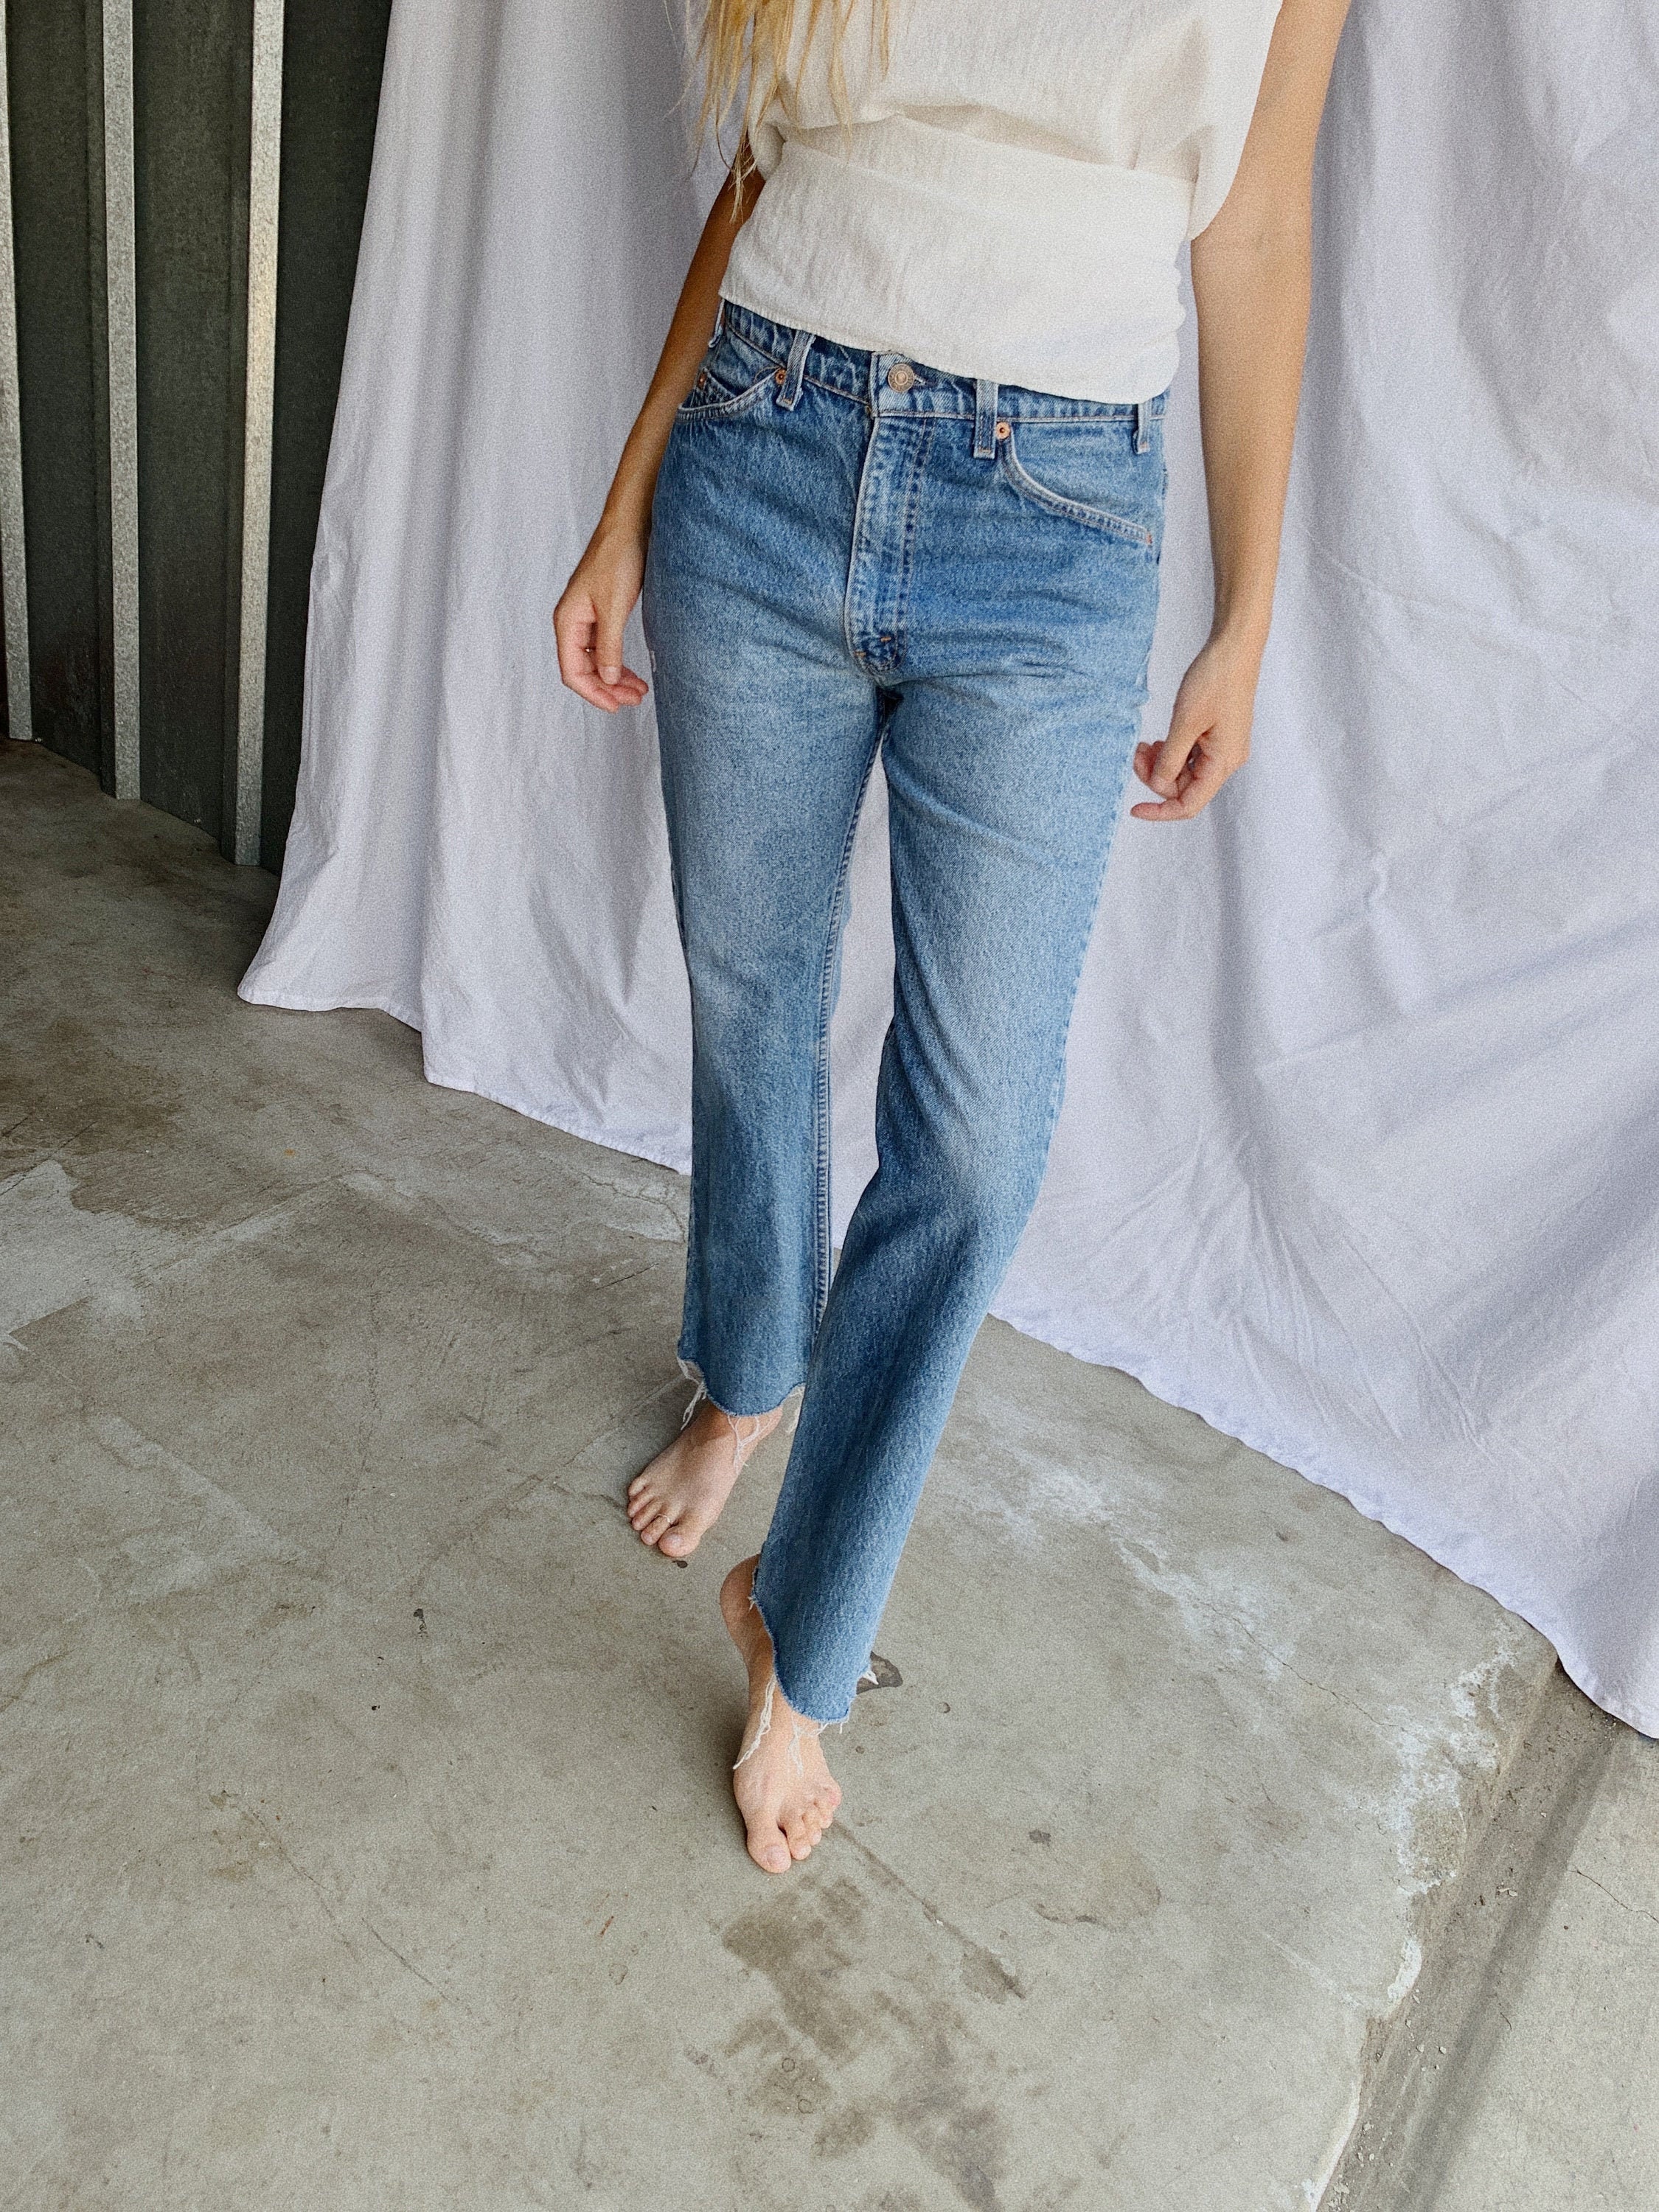 Levi's jeans - size 31